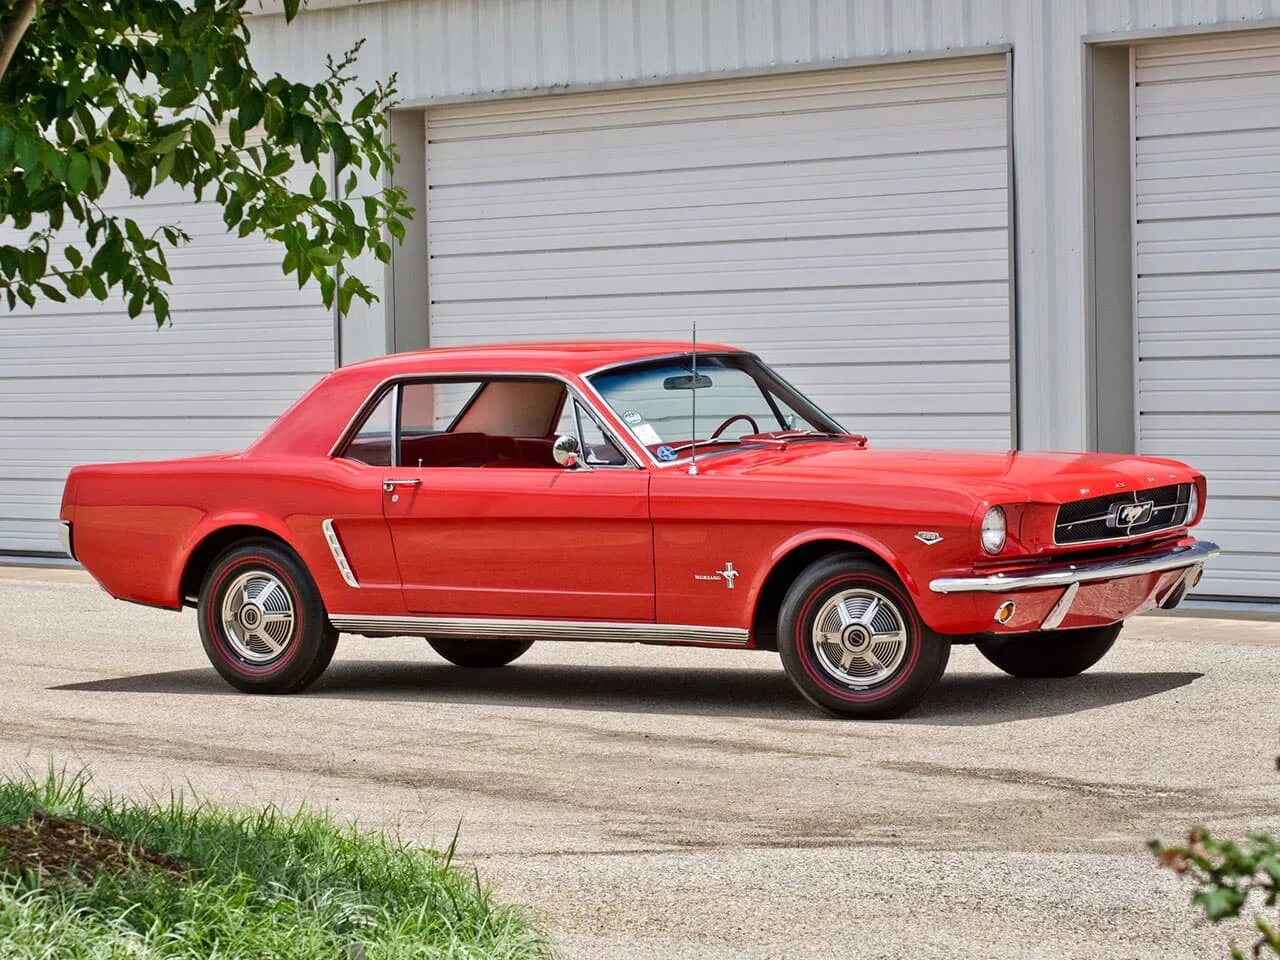 1964 года купить. Форд Мустанг 1965. Форд Мустанг Shelby 1965. Ford Mustang 1965 Coupe. Форд Мустанг хардтоп 1965.